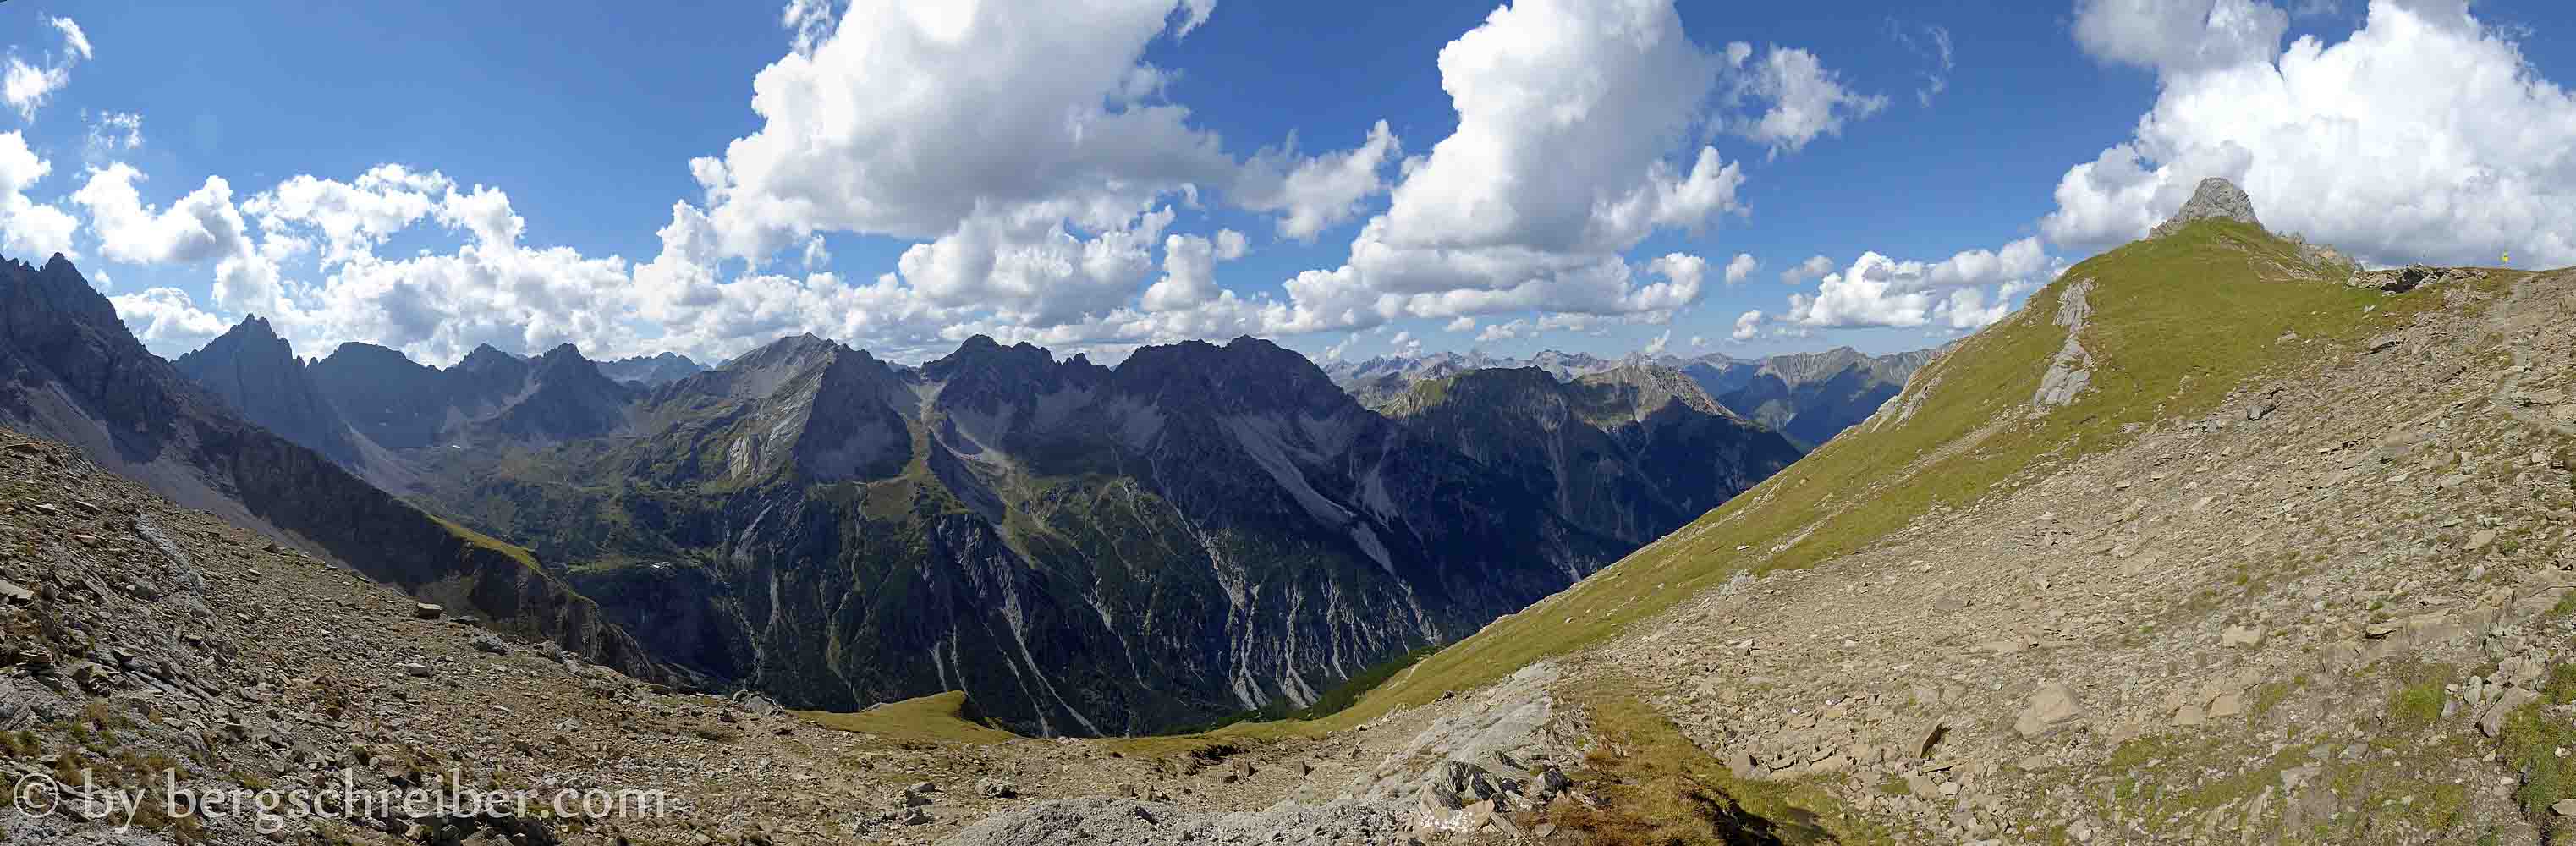 Panoramablick über die Berge des Parzinn vom Galtseitejoch